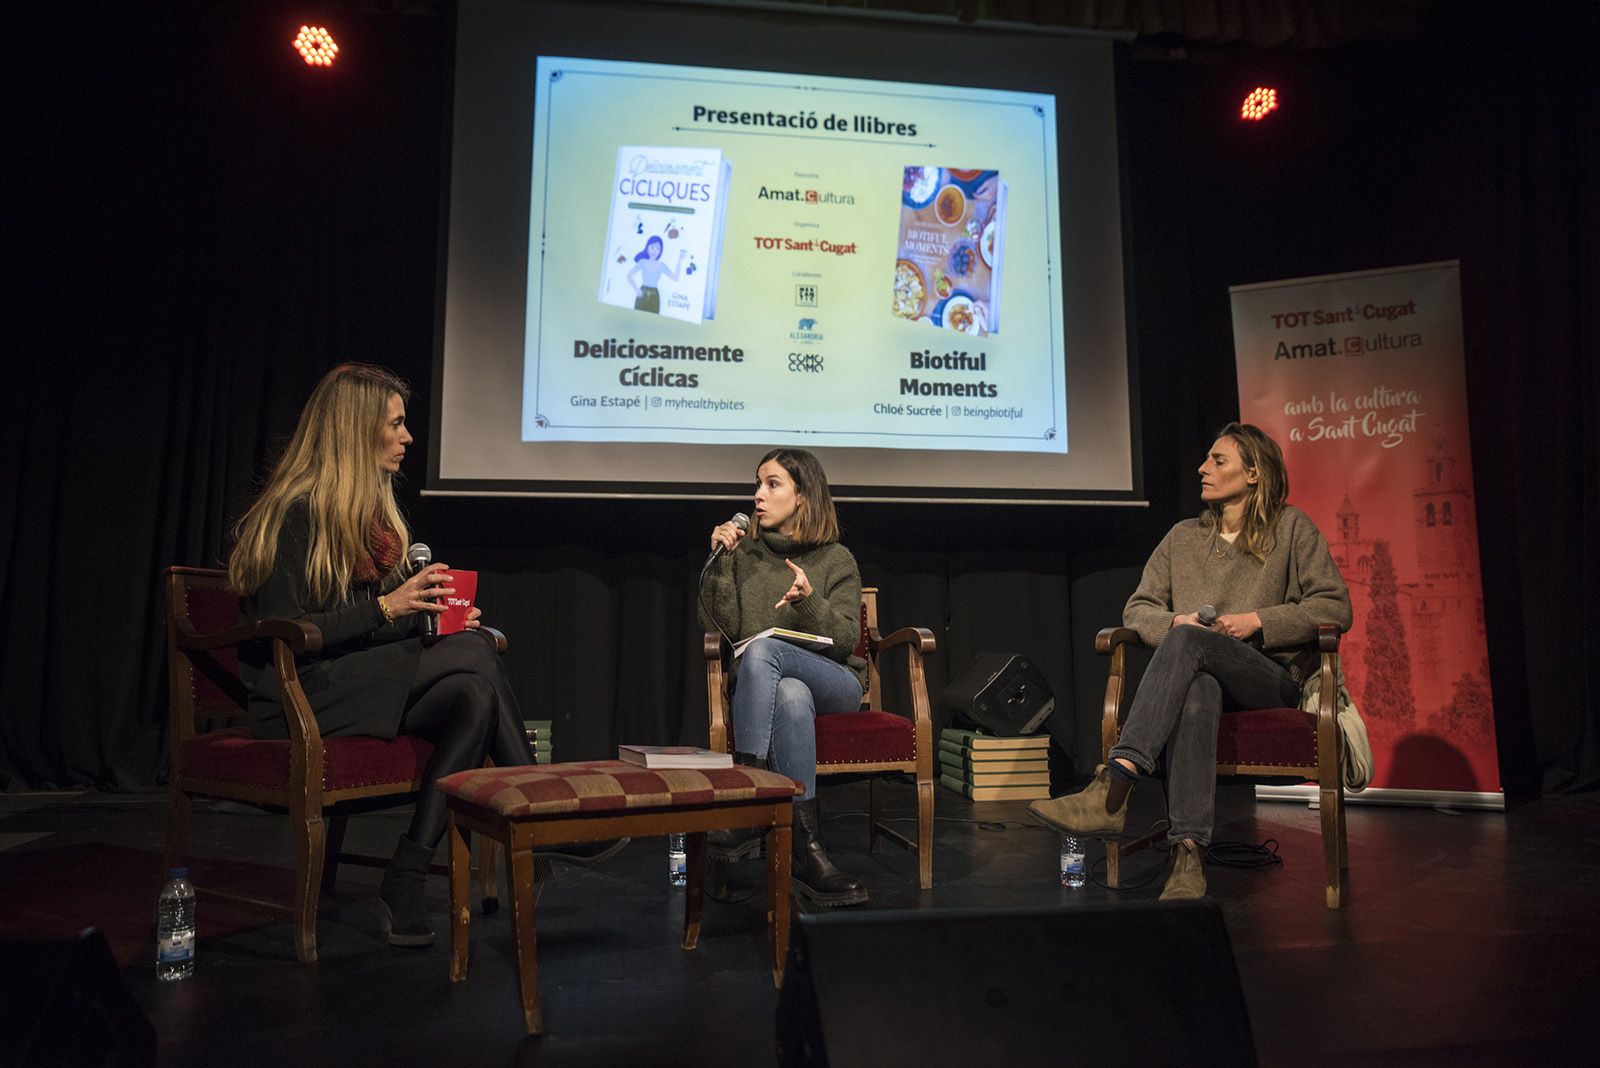 Les escriptores santcugatenques Gina Estapé i Chloé Sucrée presenten els seus respectius llibres. FOTO: Bernat Millet.